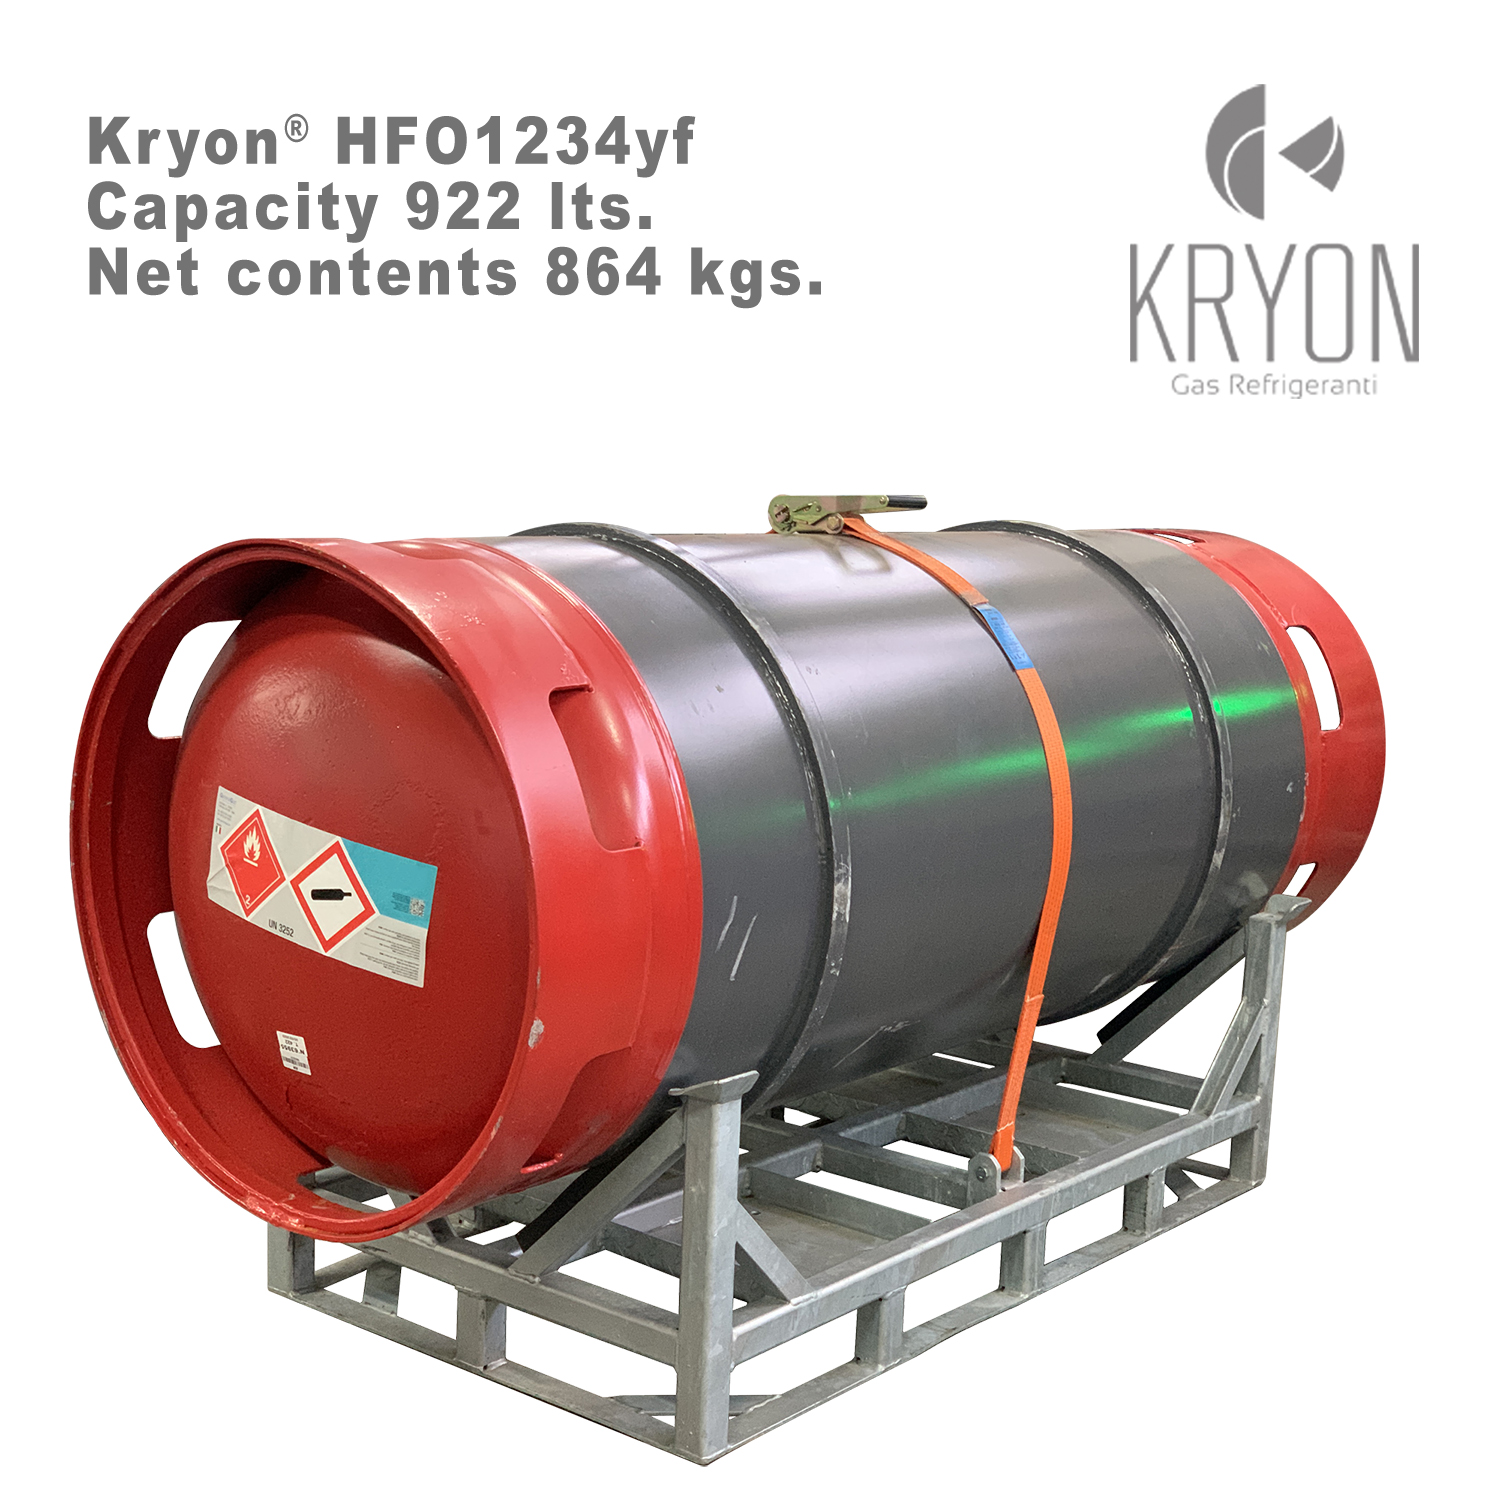 1234yf Kryon® HFO yf in Fusto a Rendere 920 litri - 864 Kg - T-PED - Foto 1 